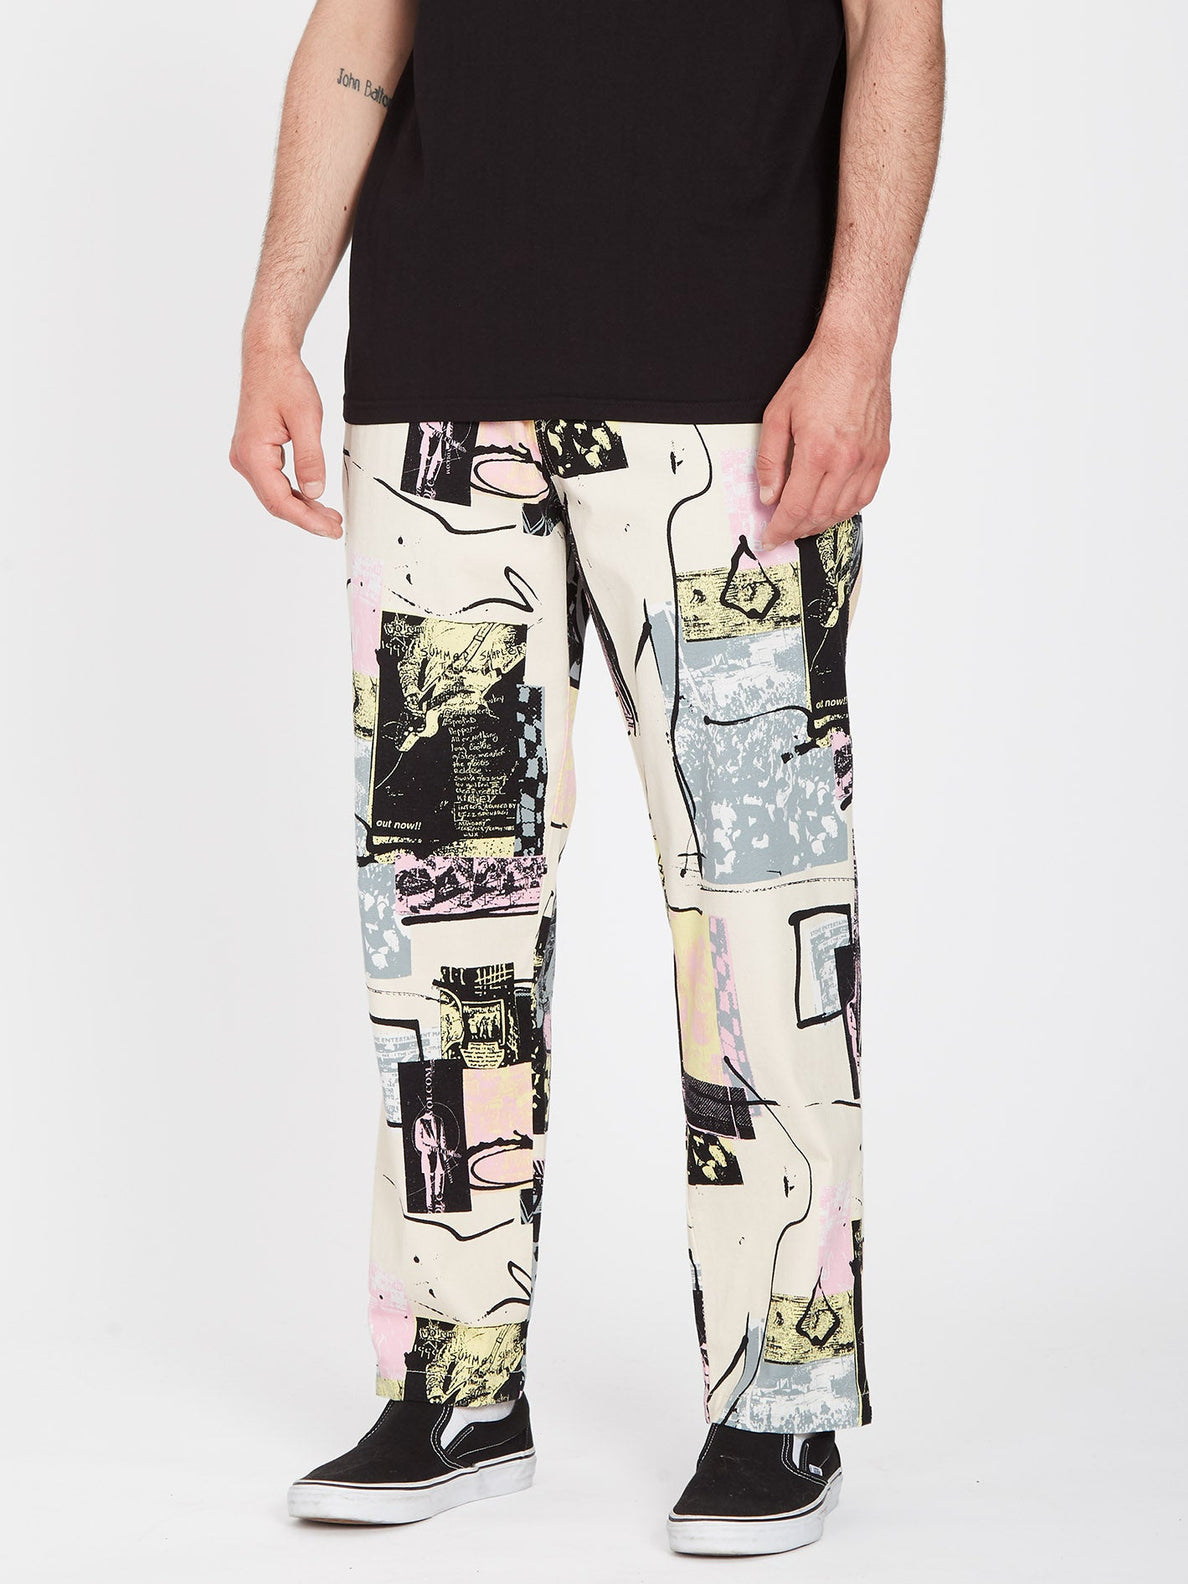 Pantalon Volcom Psychstone - Whitecap Grey | Pantalones con goma de Hombre | Todos los pantalones de hombre | Volcom Shop | surfdevils.com